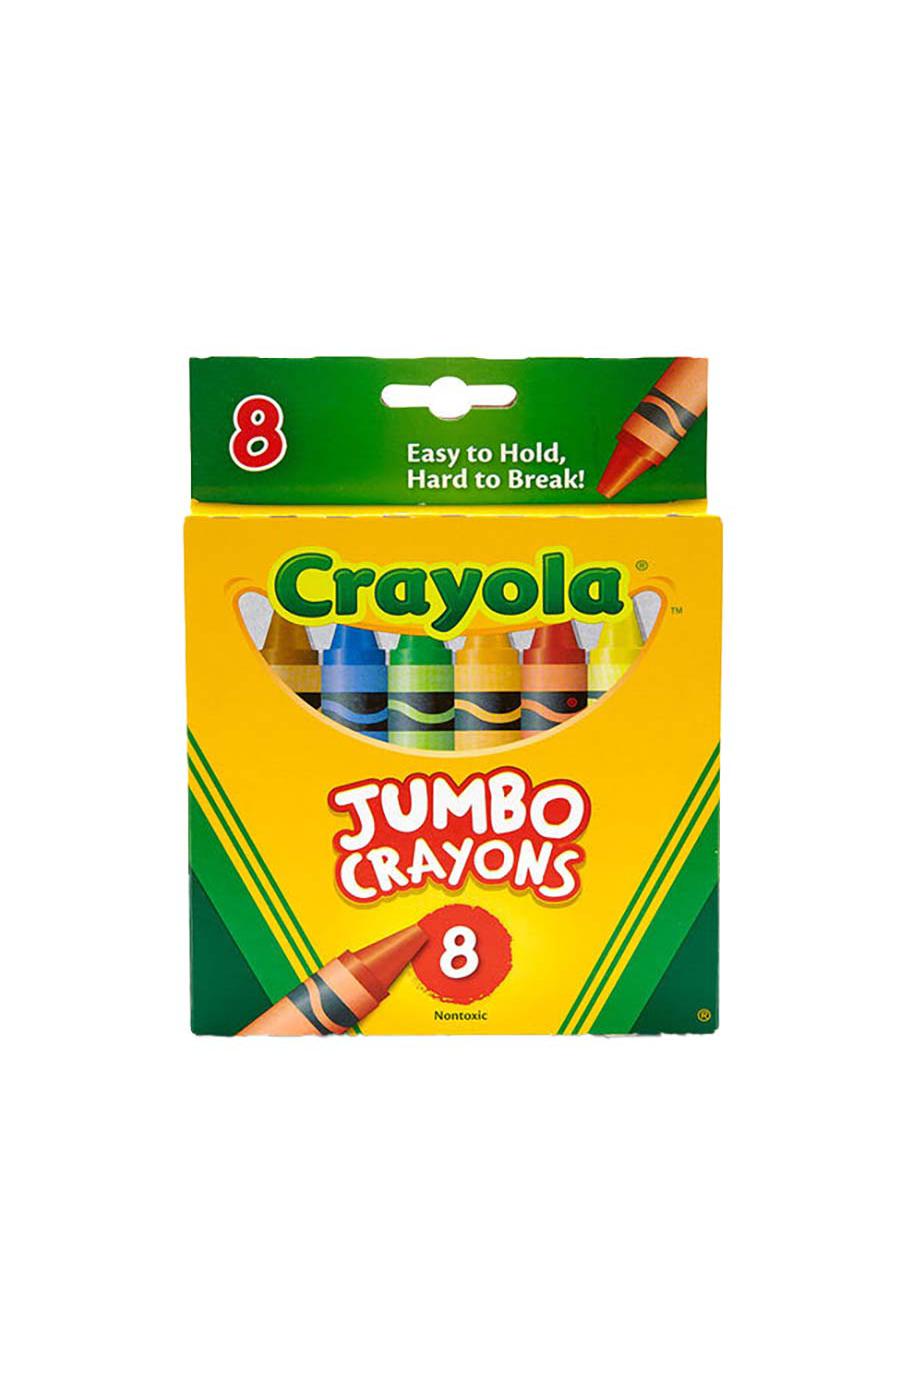 Crayola Jumbo Crayons; image 1 of 2